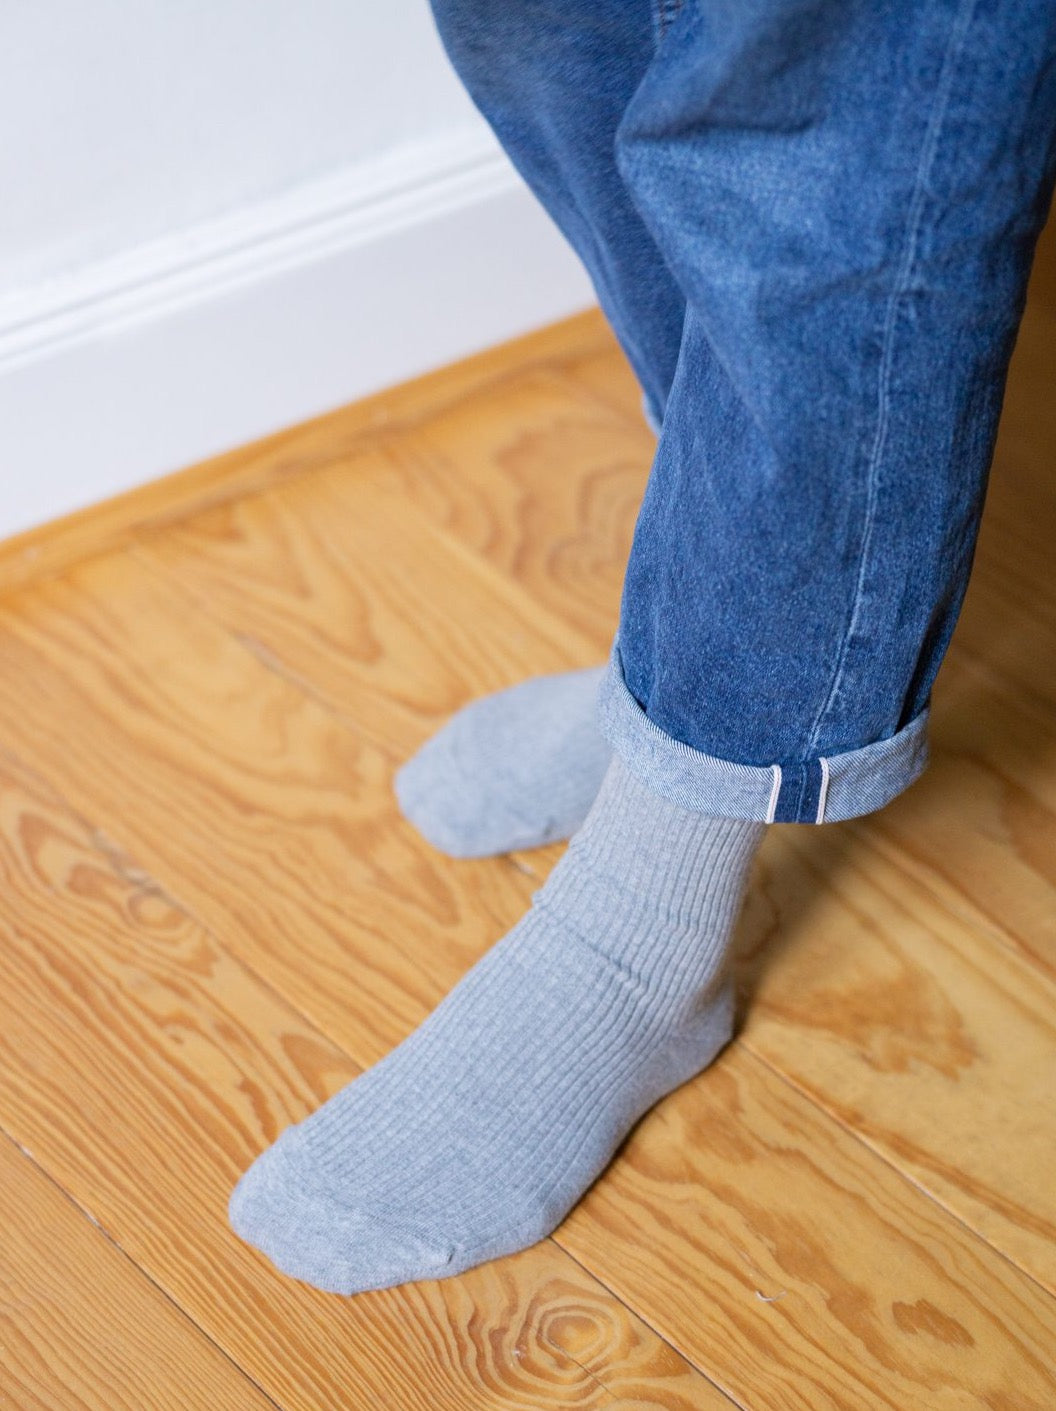 Unsere FUXBAU Fair Fashion Basic Socken in graumeliert aus 100% GOTS zertifizierter Biobaumwolle